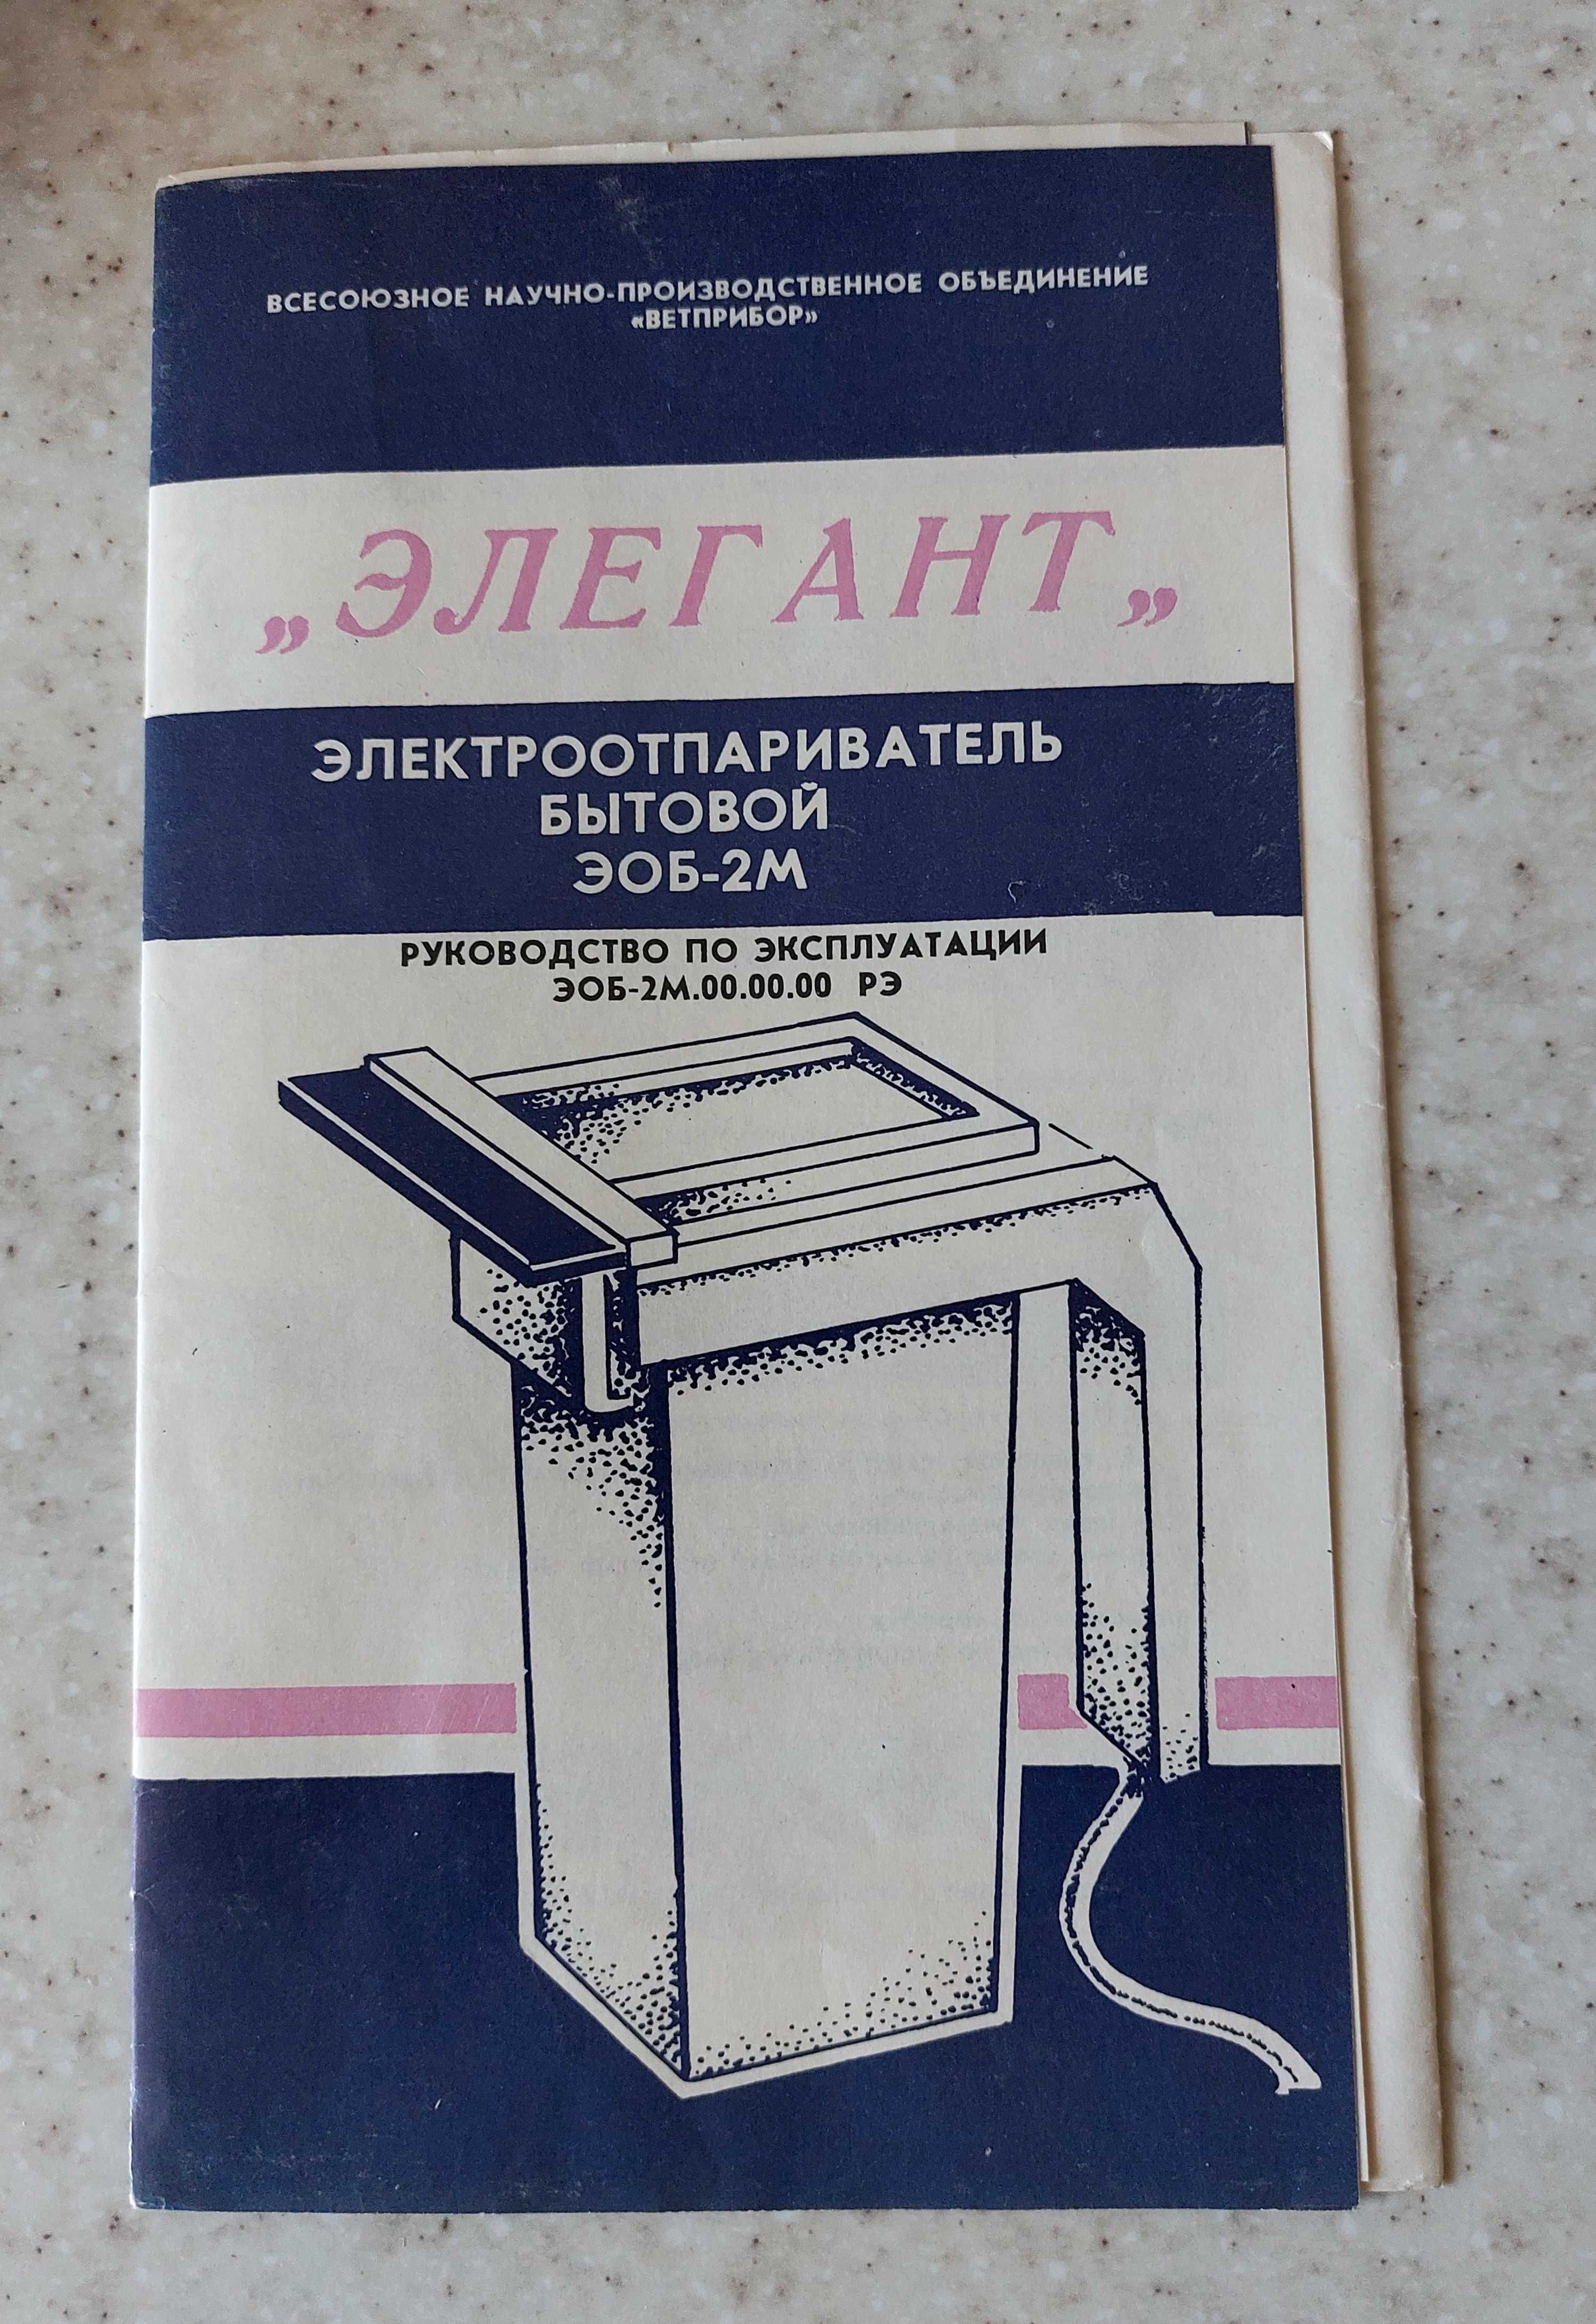 Электроотпариватель бытовой "Элегант" СССР - на реабилитацию